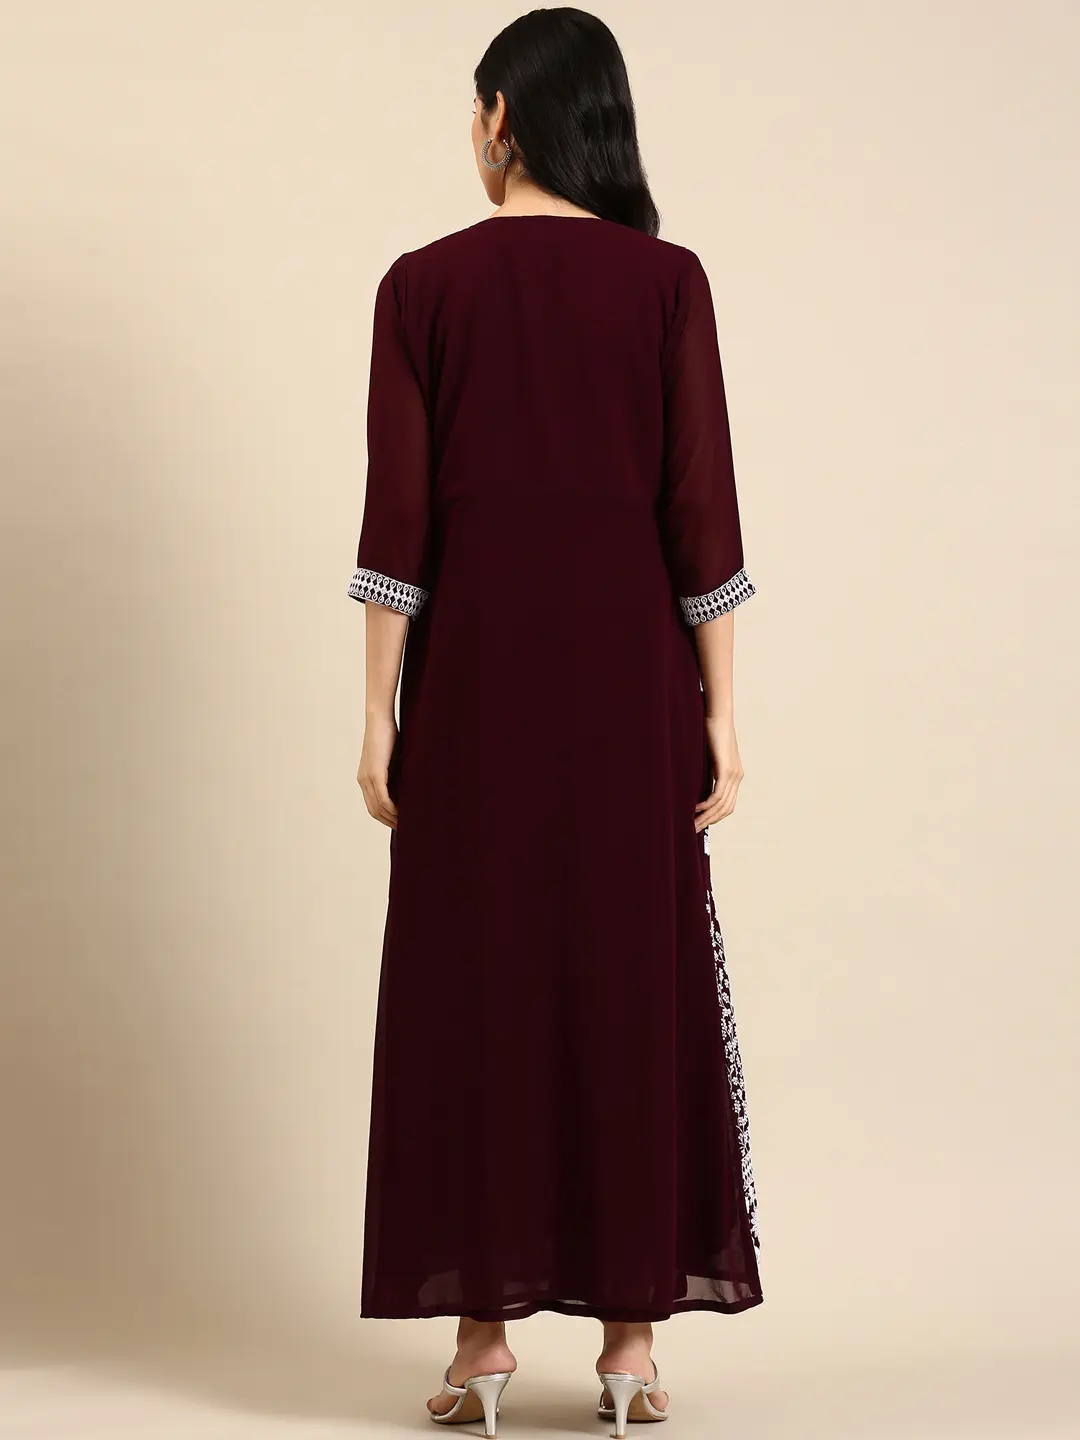 Showoff | SHOWOFF Women Burgundy Embellished Round Neck Sleeveless Ankle Length A-Line Kurta 4